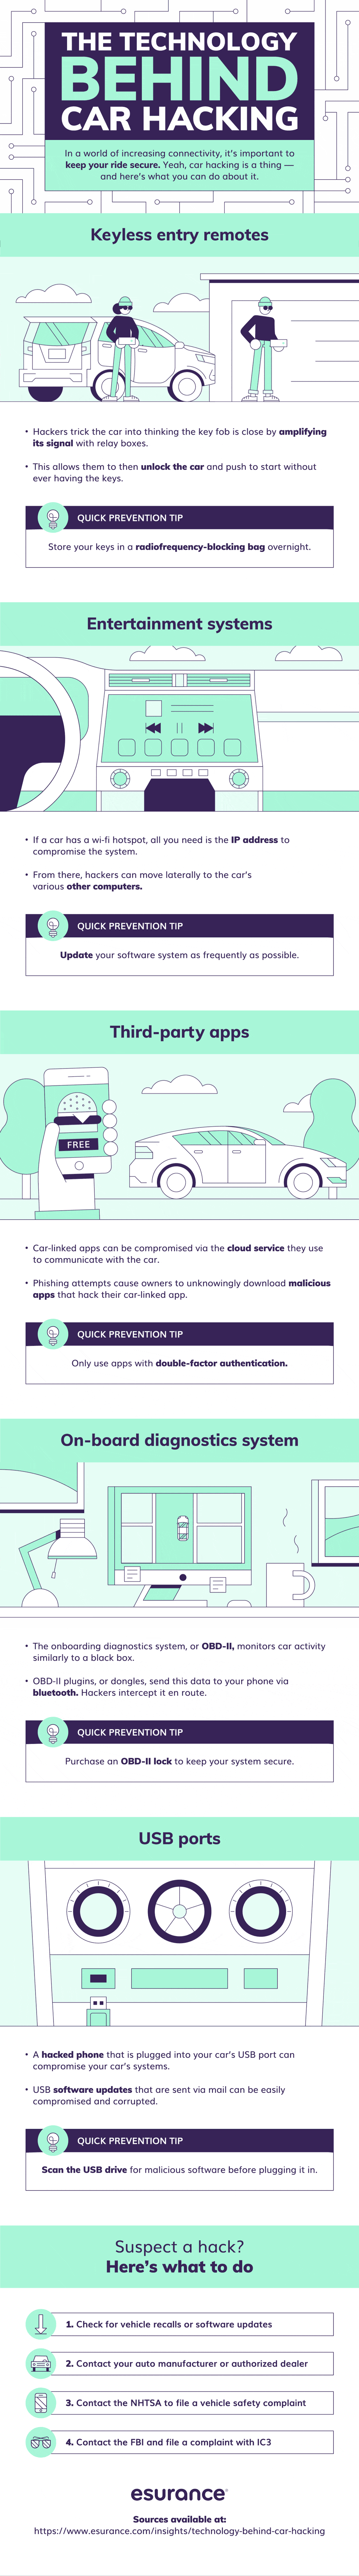 Car hacking en de techniek erachter